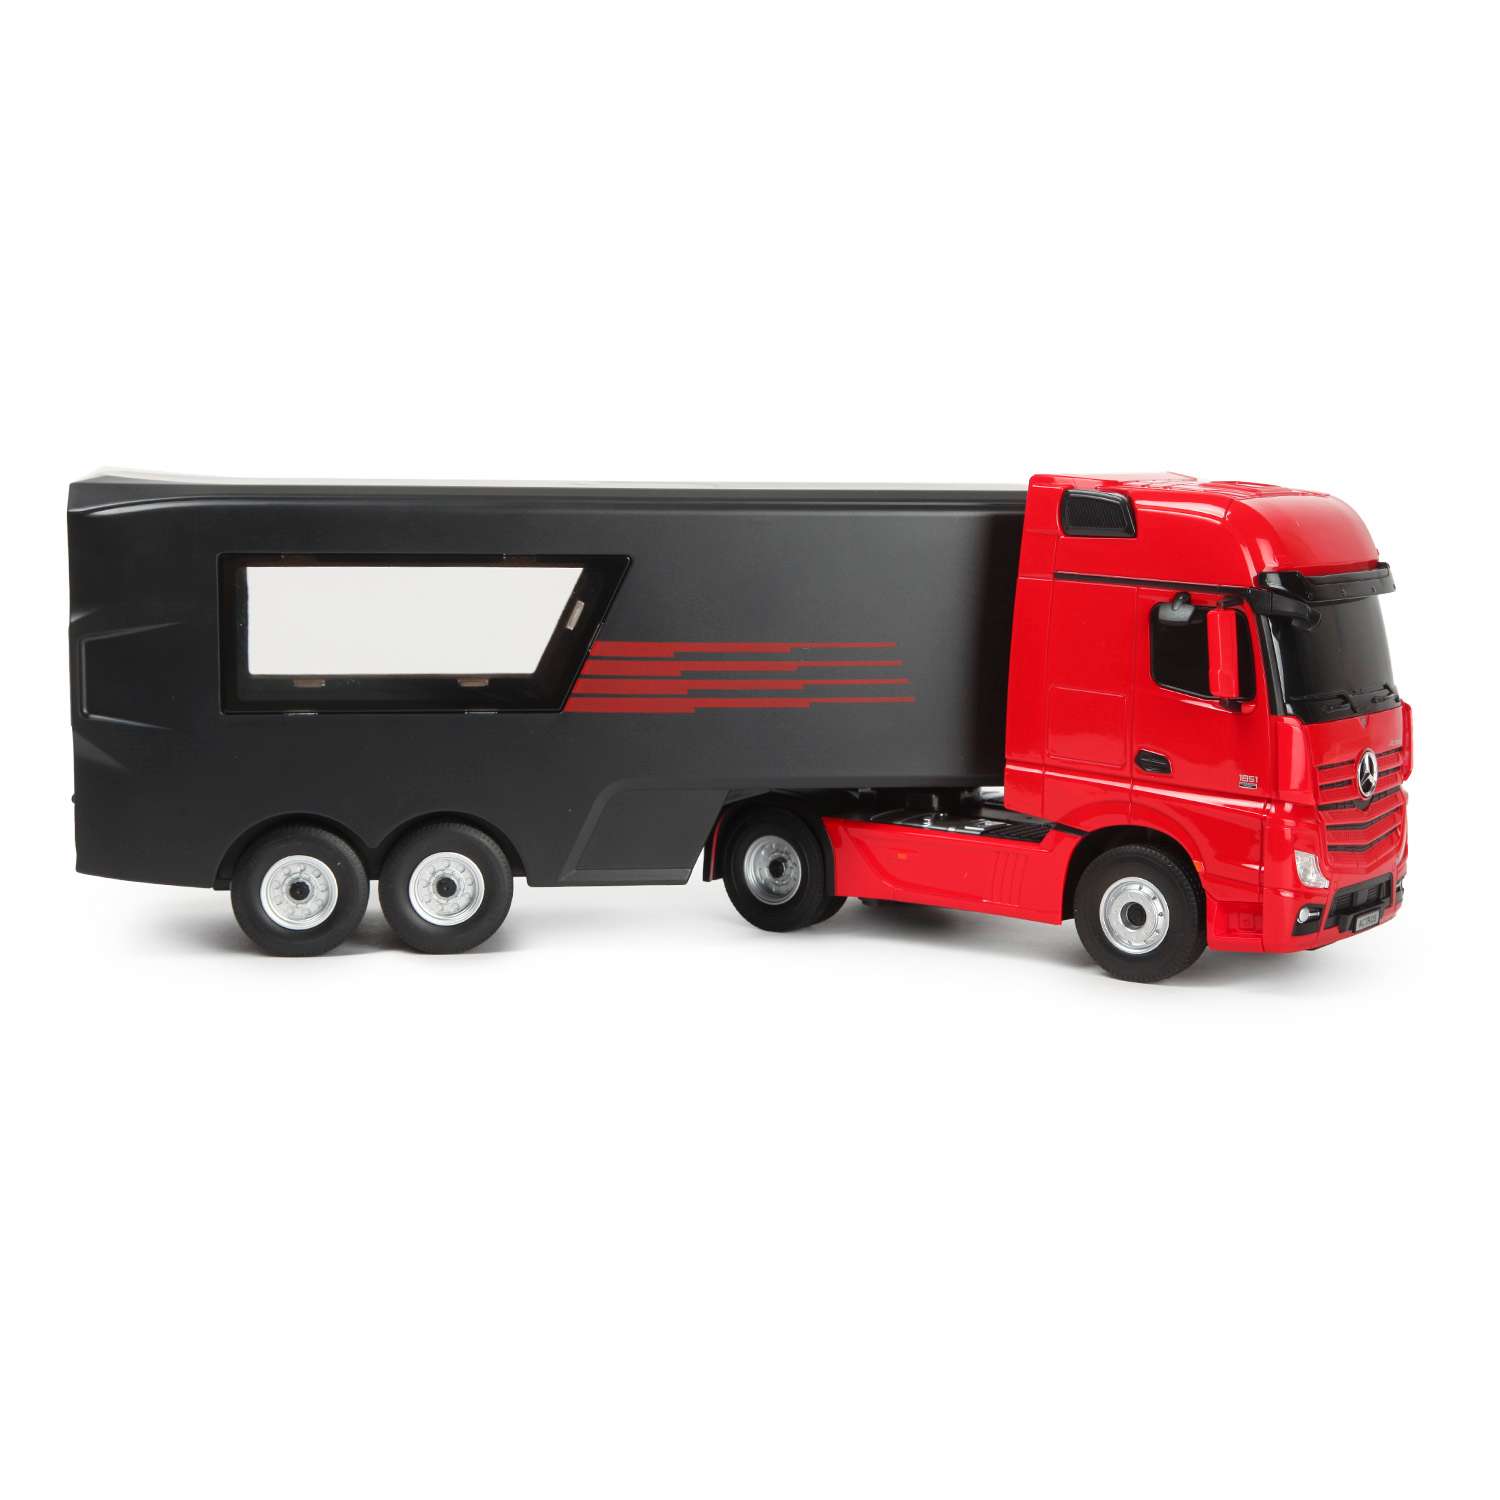 Красный грузовик турецкий. Deformation YS-04 грузовик красный. Красный тягач. Красный грузовик игрушка.